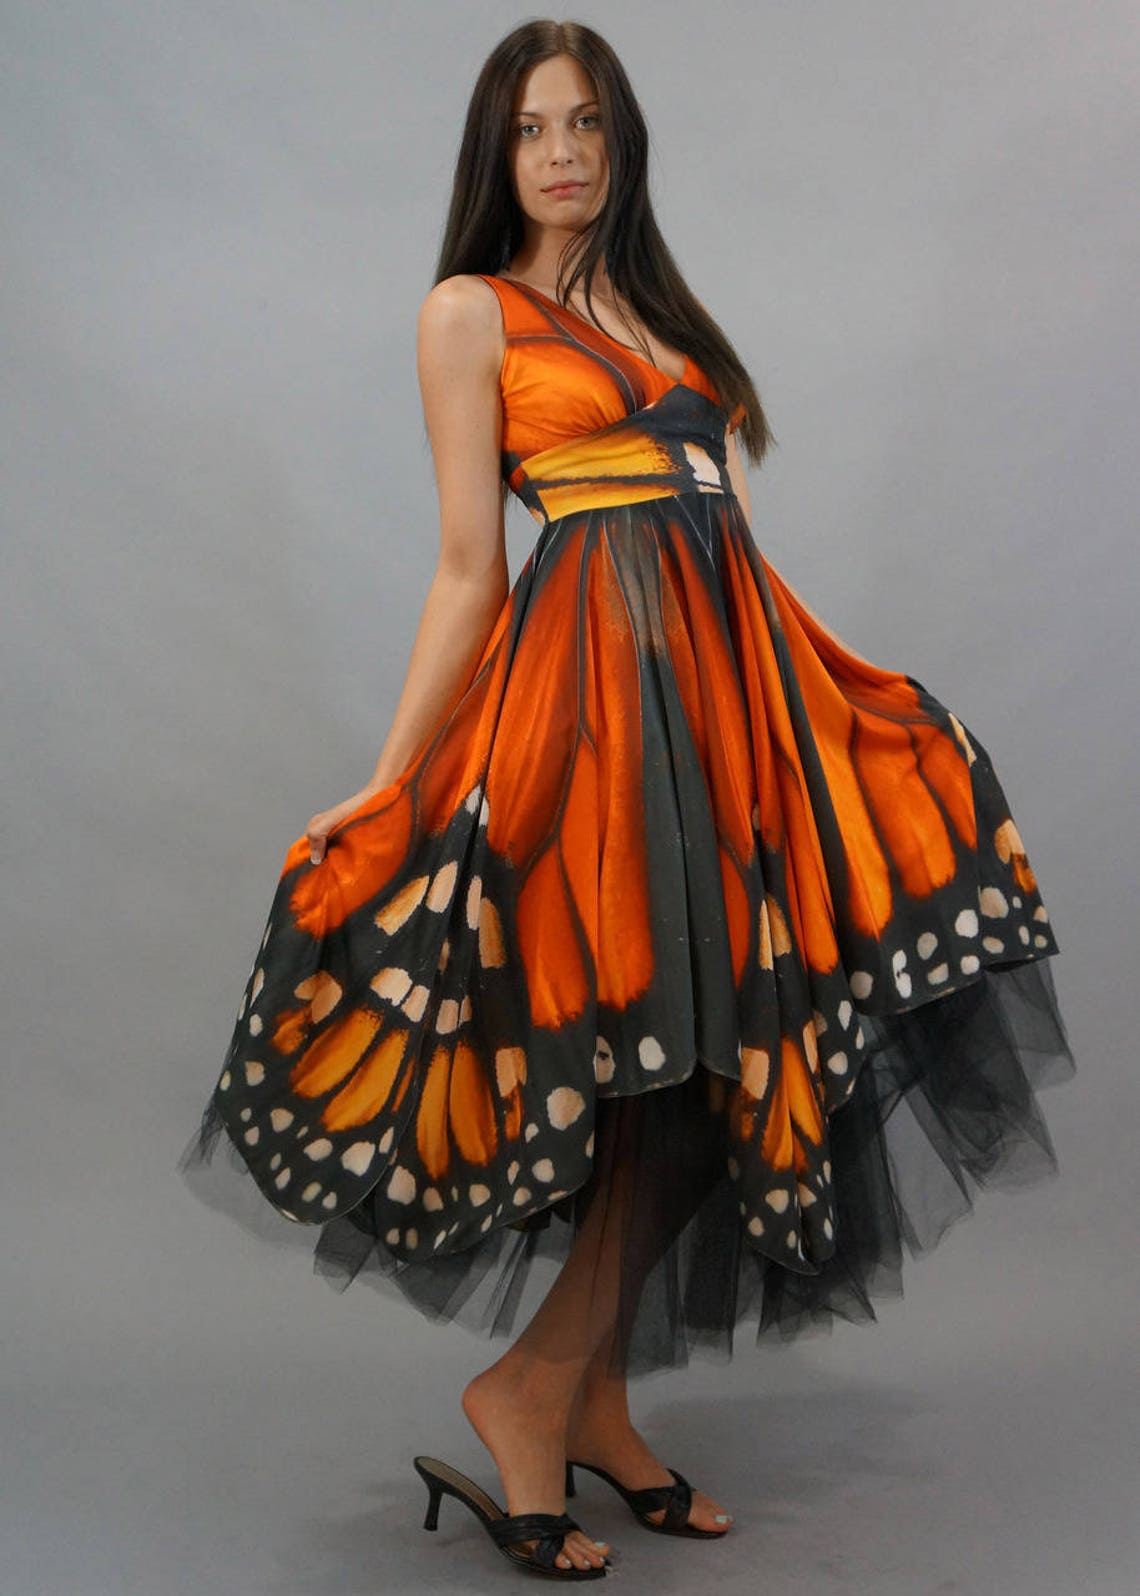 Monarch Butterfly Dress | Etsy